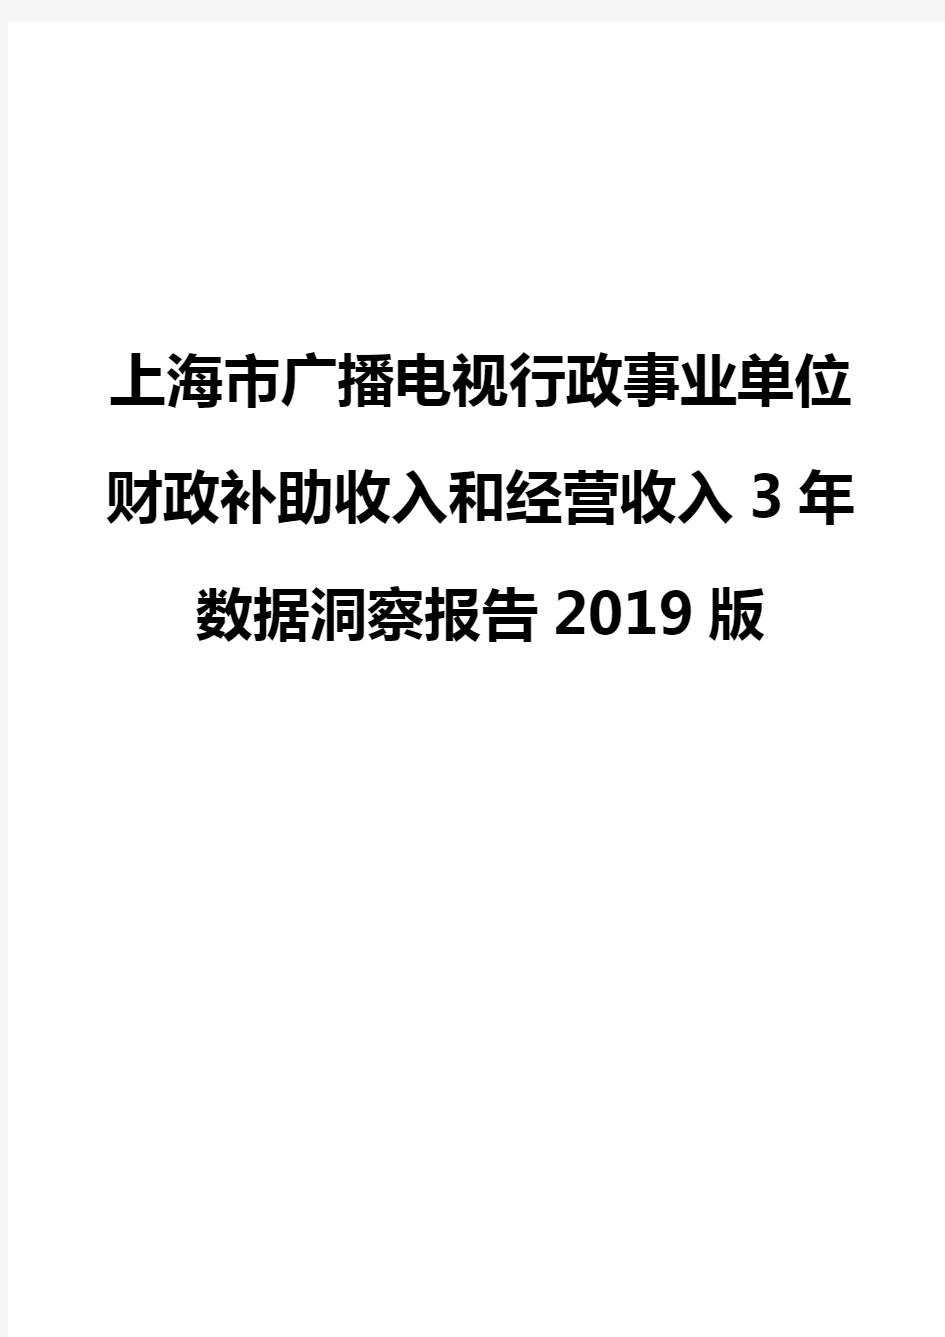 上海市广播电视行政事业单位财政补助收入和经营收入3年数据洞察报告2019版